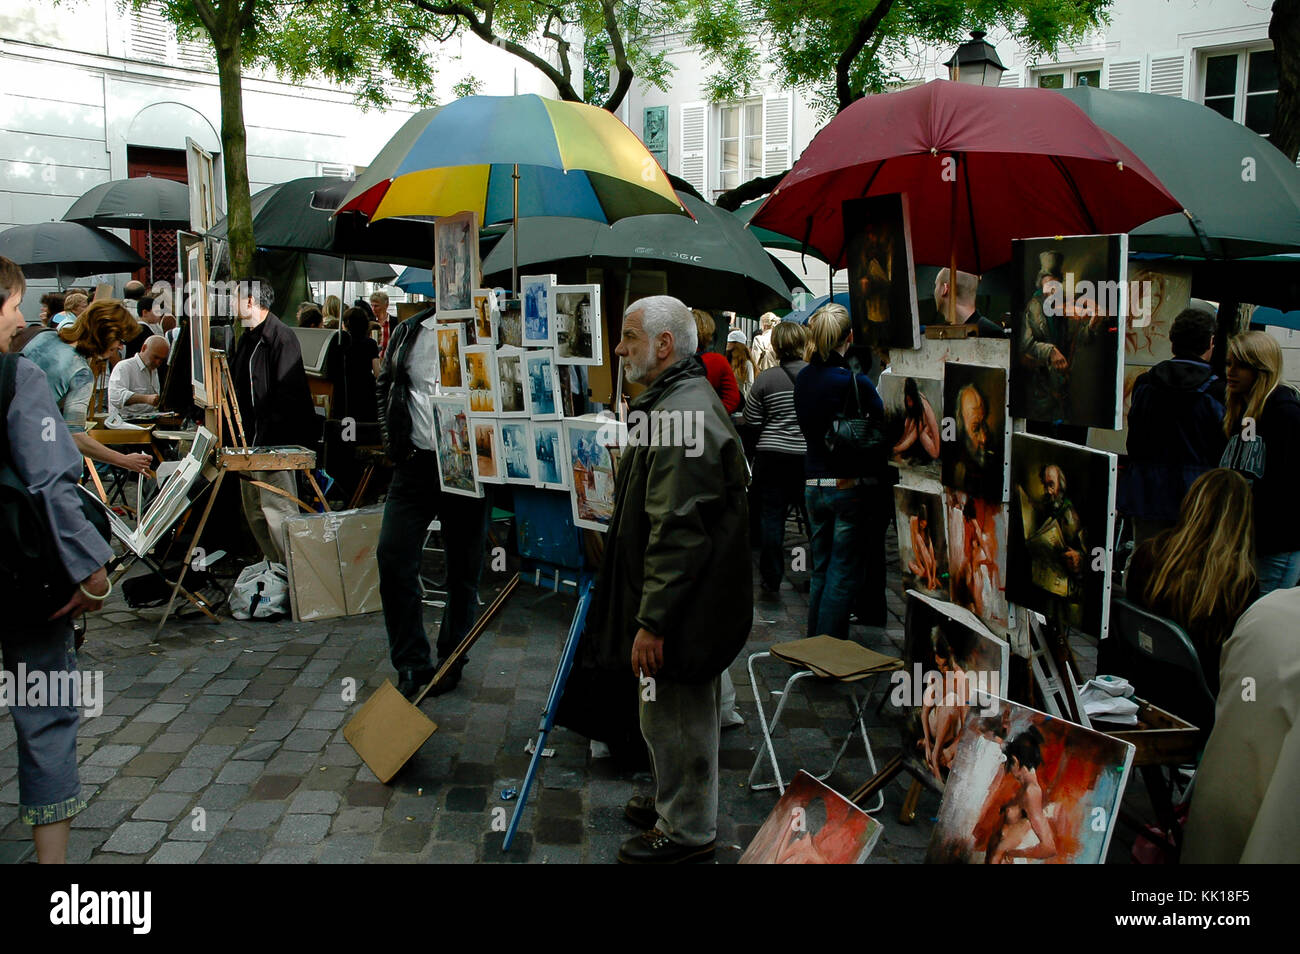 La peinture d'artistes et vente de peintures pour les touristes au trimestre d'artistes à Montmartre sur le chemin de la Basilique du Sacré-Cœur de Paris Banque D'Images